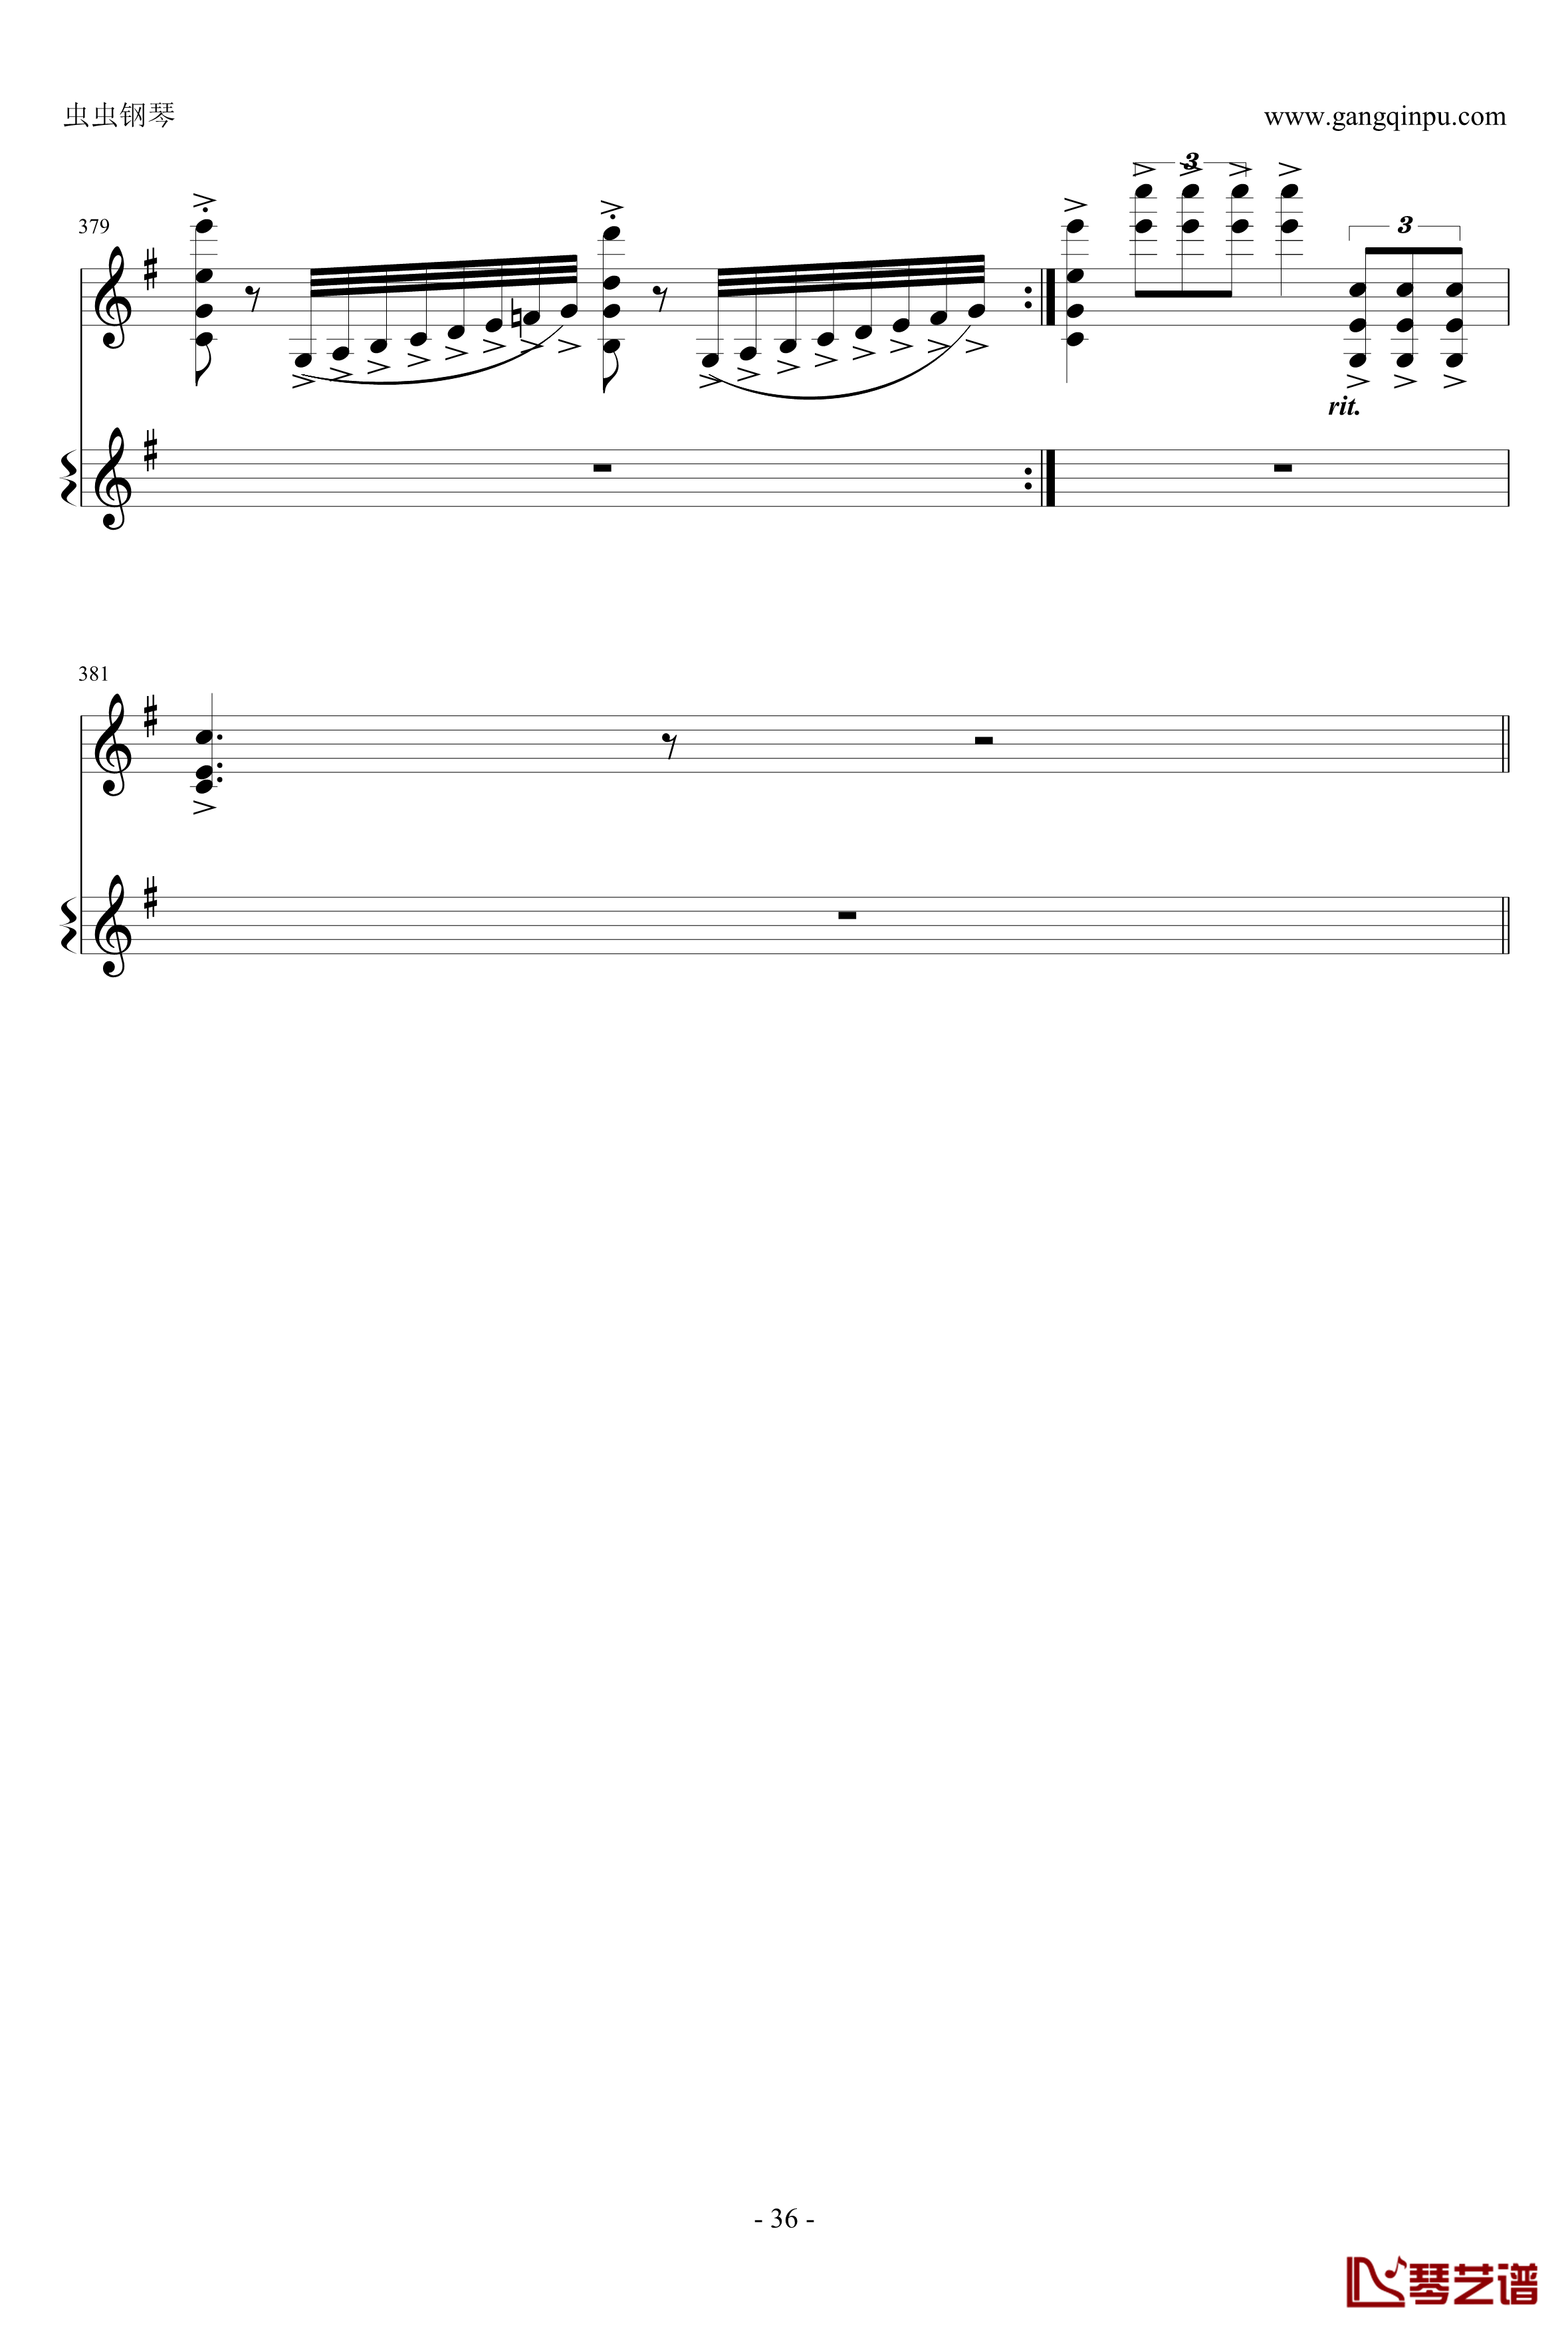 意大利国歌钢琴谱-变奏曲修改版-DXF36